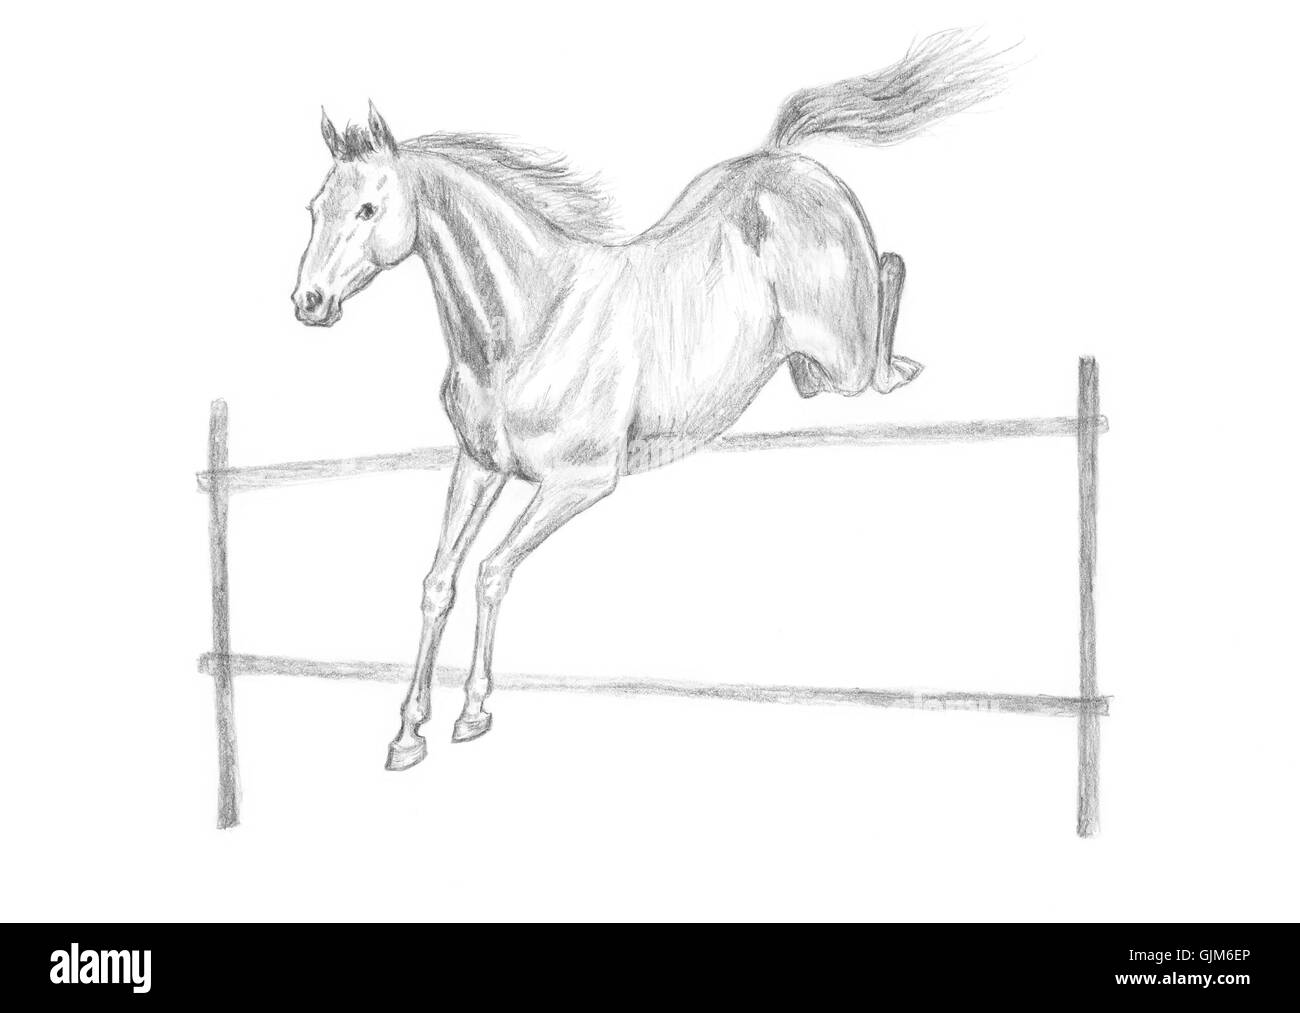 How Horses Jump on Behance